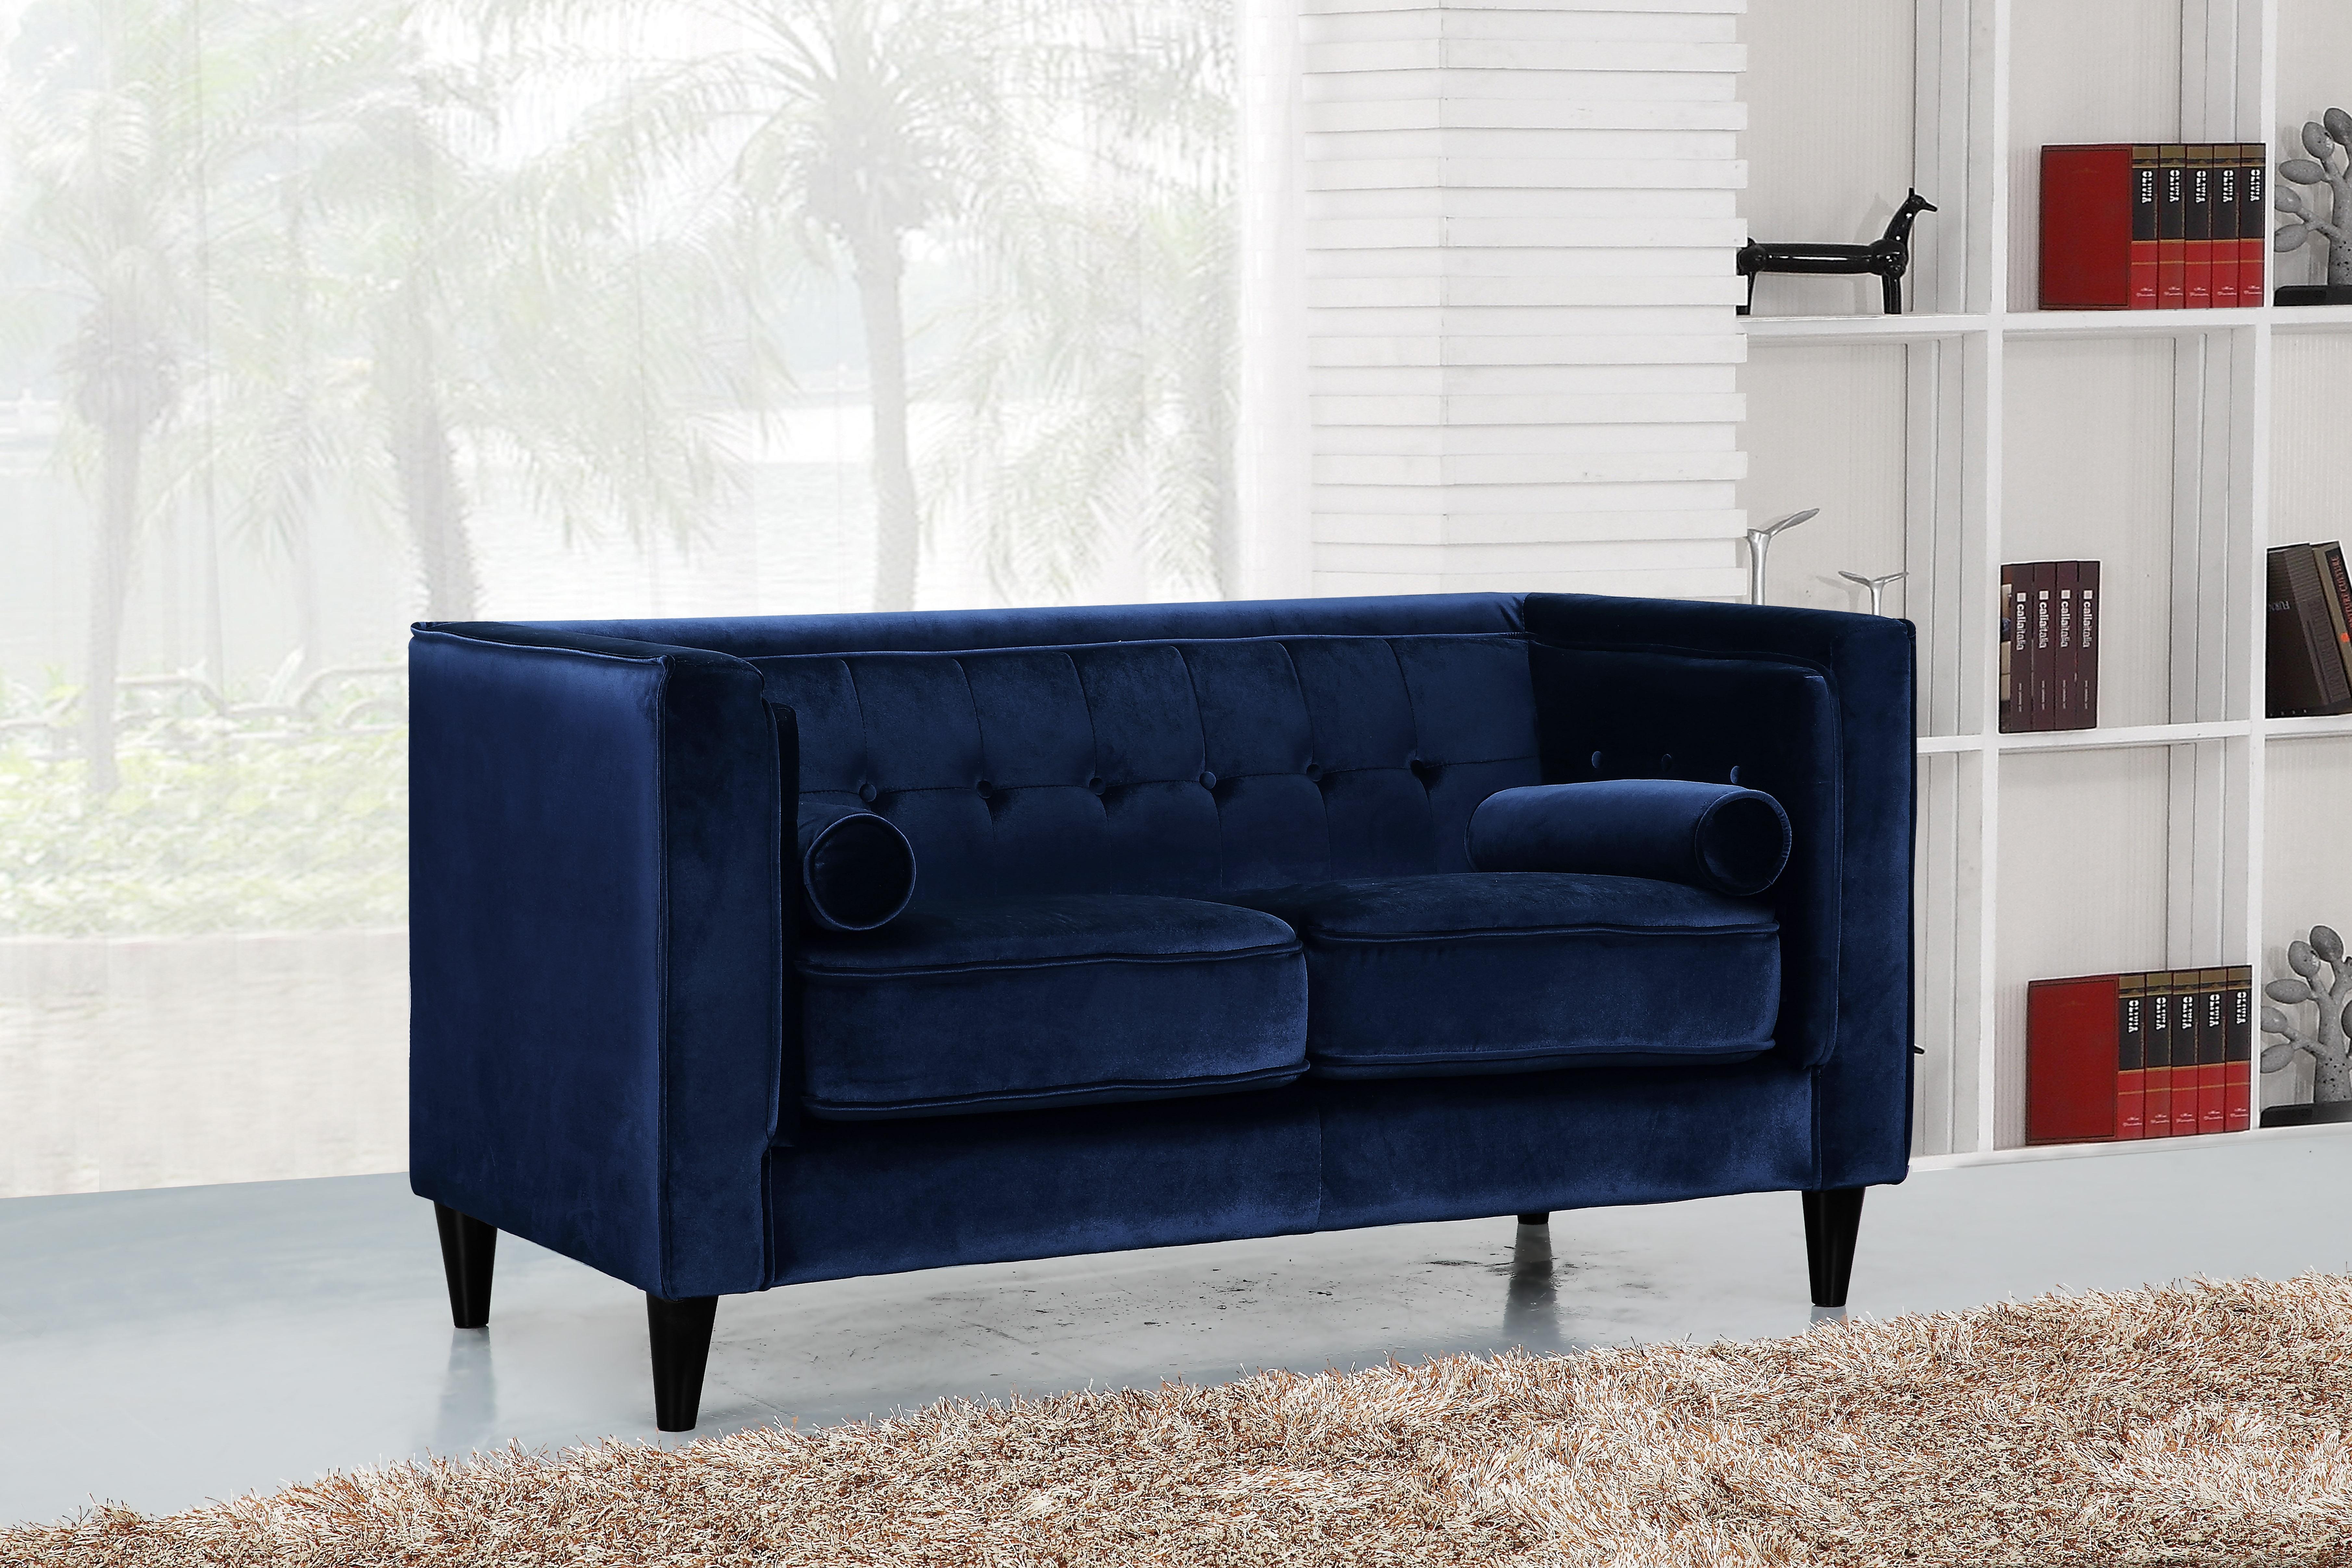 

    
642Navy-Set-2 Meridian Furniture Sofa Loveseat
